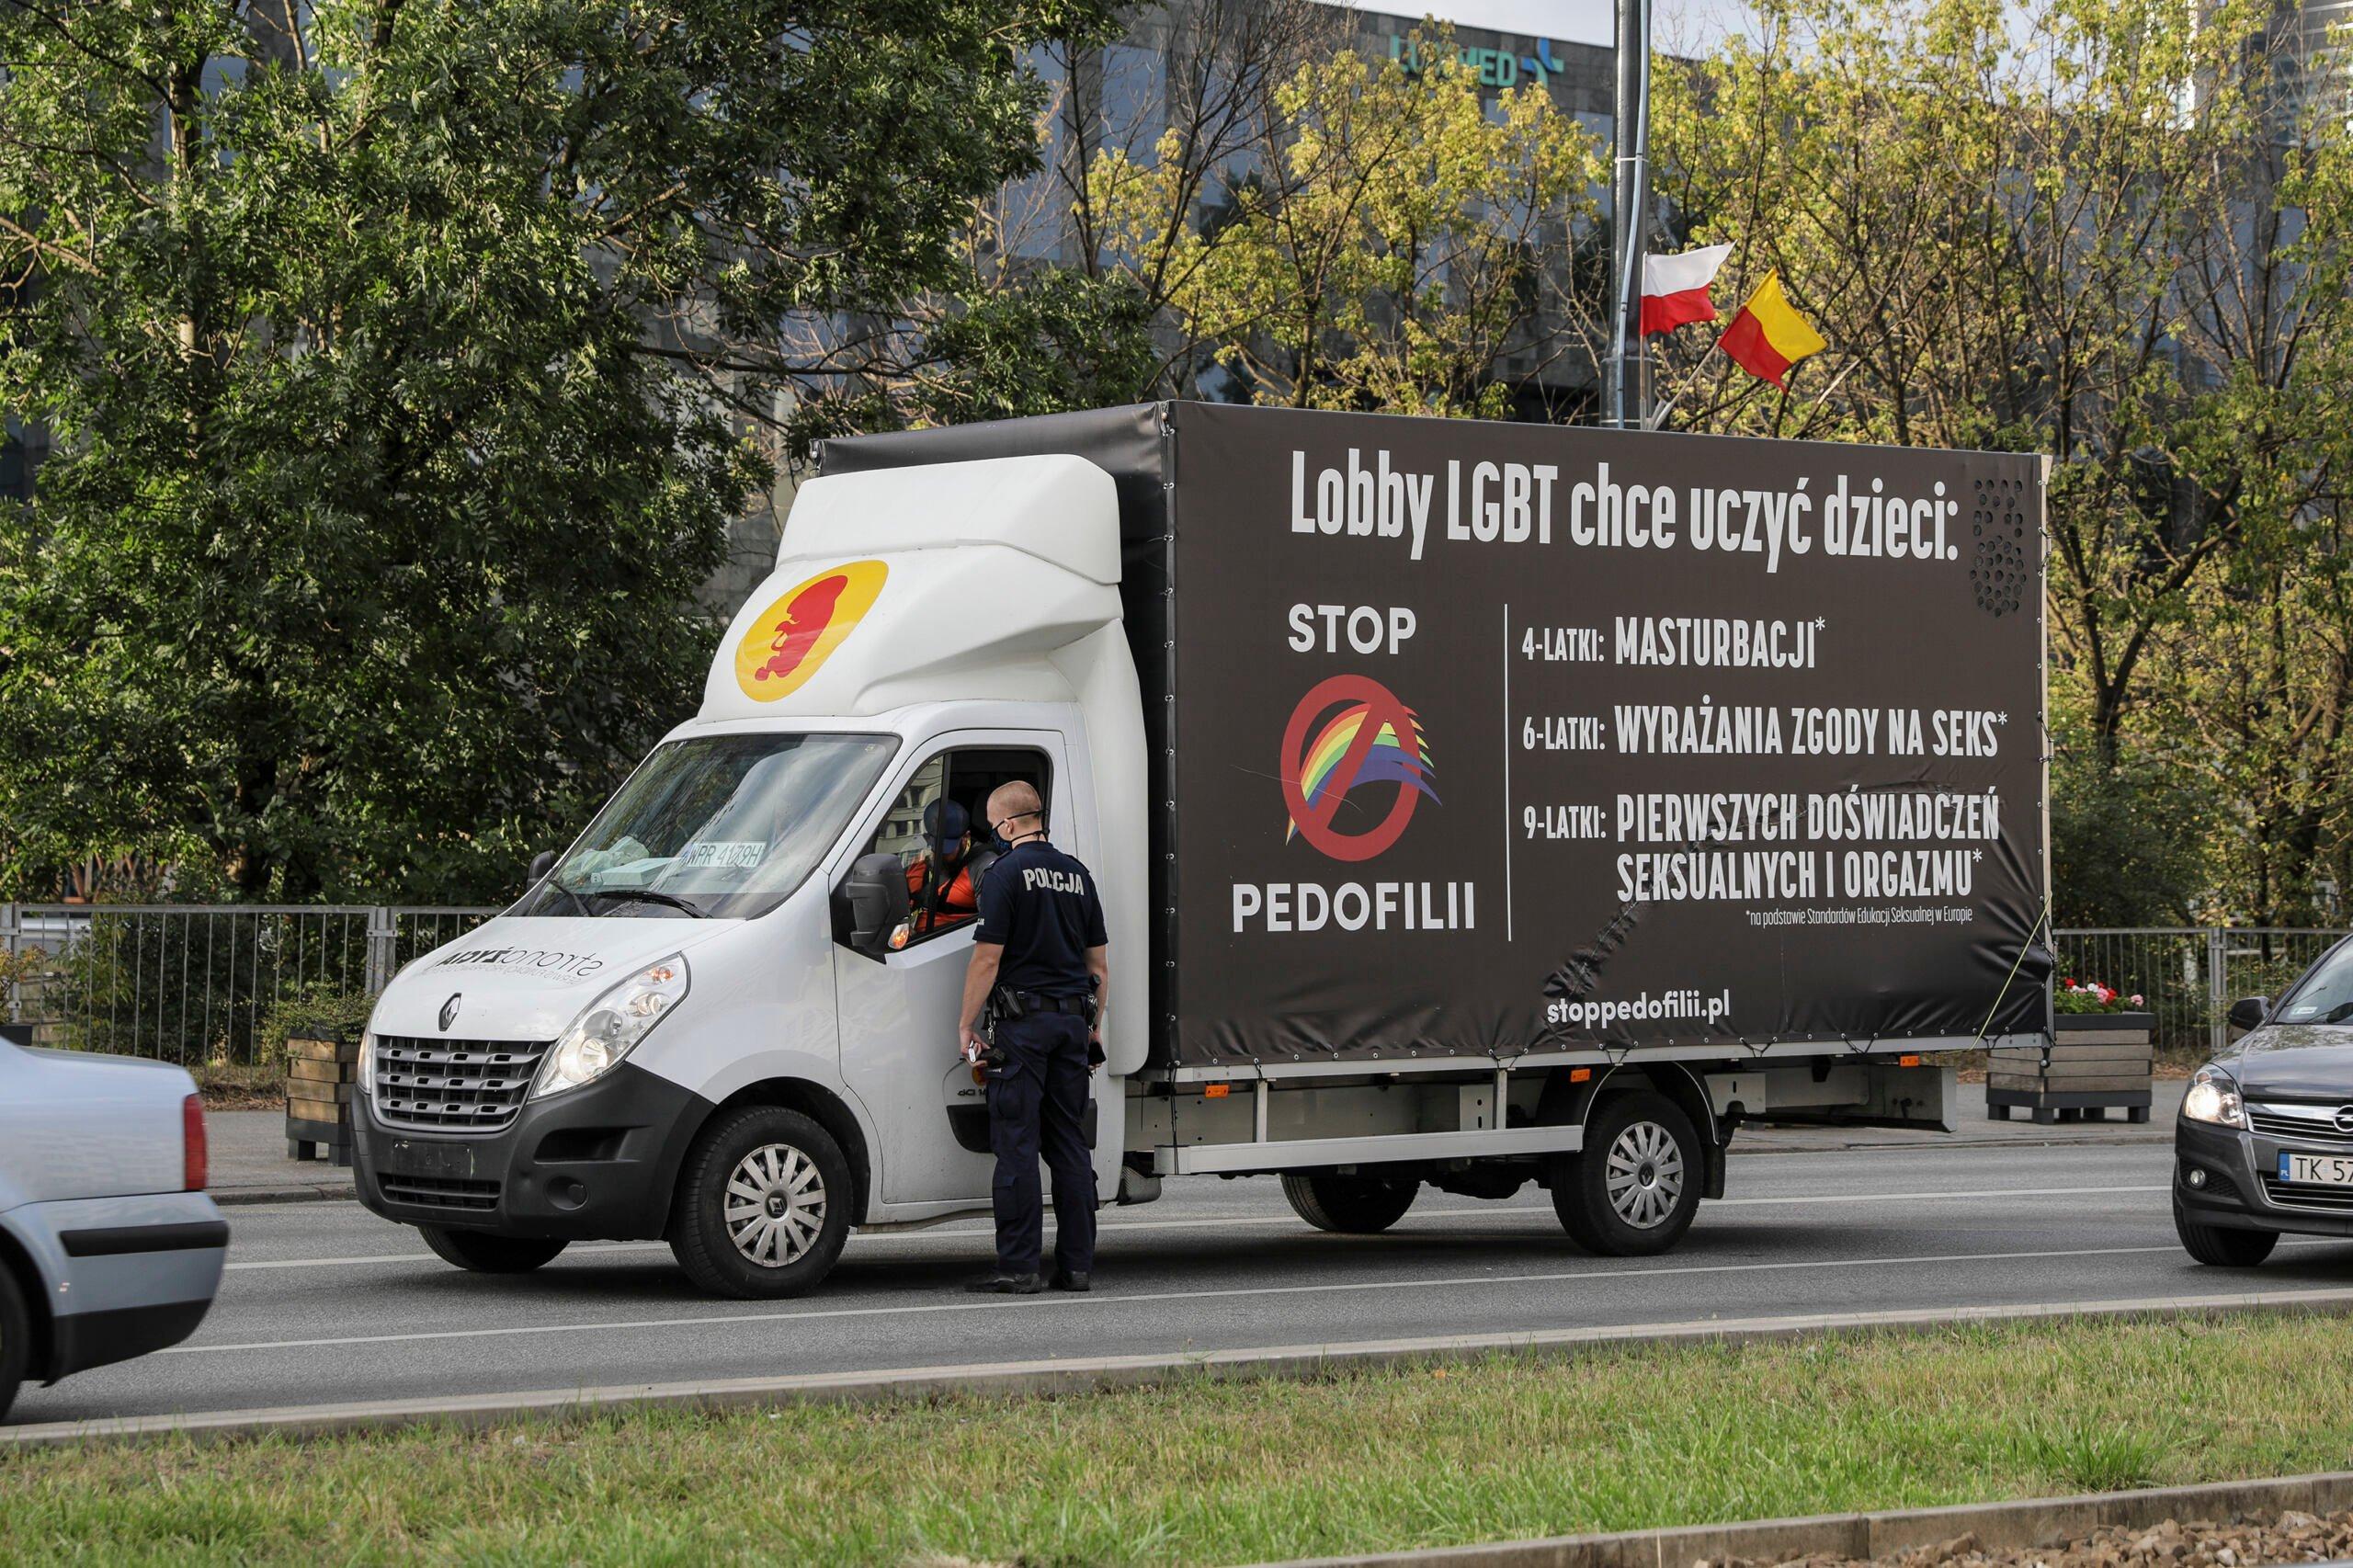 Homofobiczna furgonetka na ulicach miasta